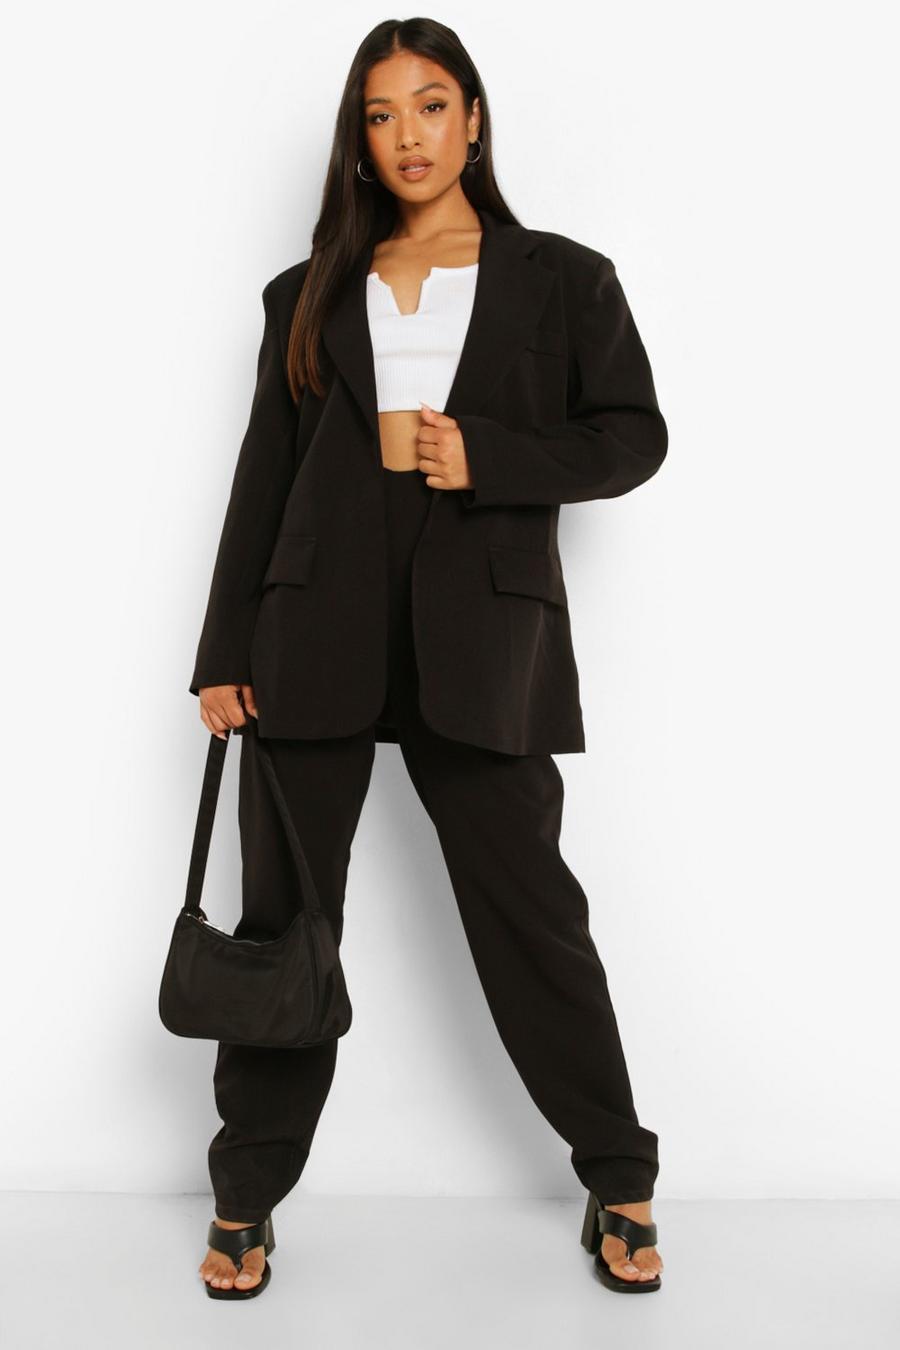 שחור nero מכנסי חליפה עם מותן בצורת וי ובלייזר פטיט